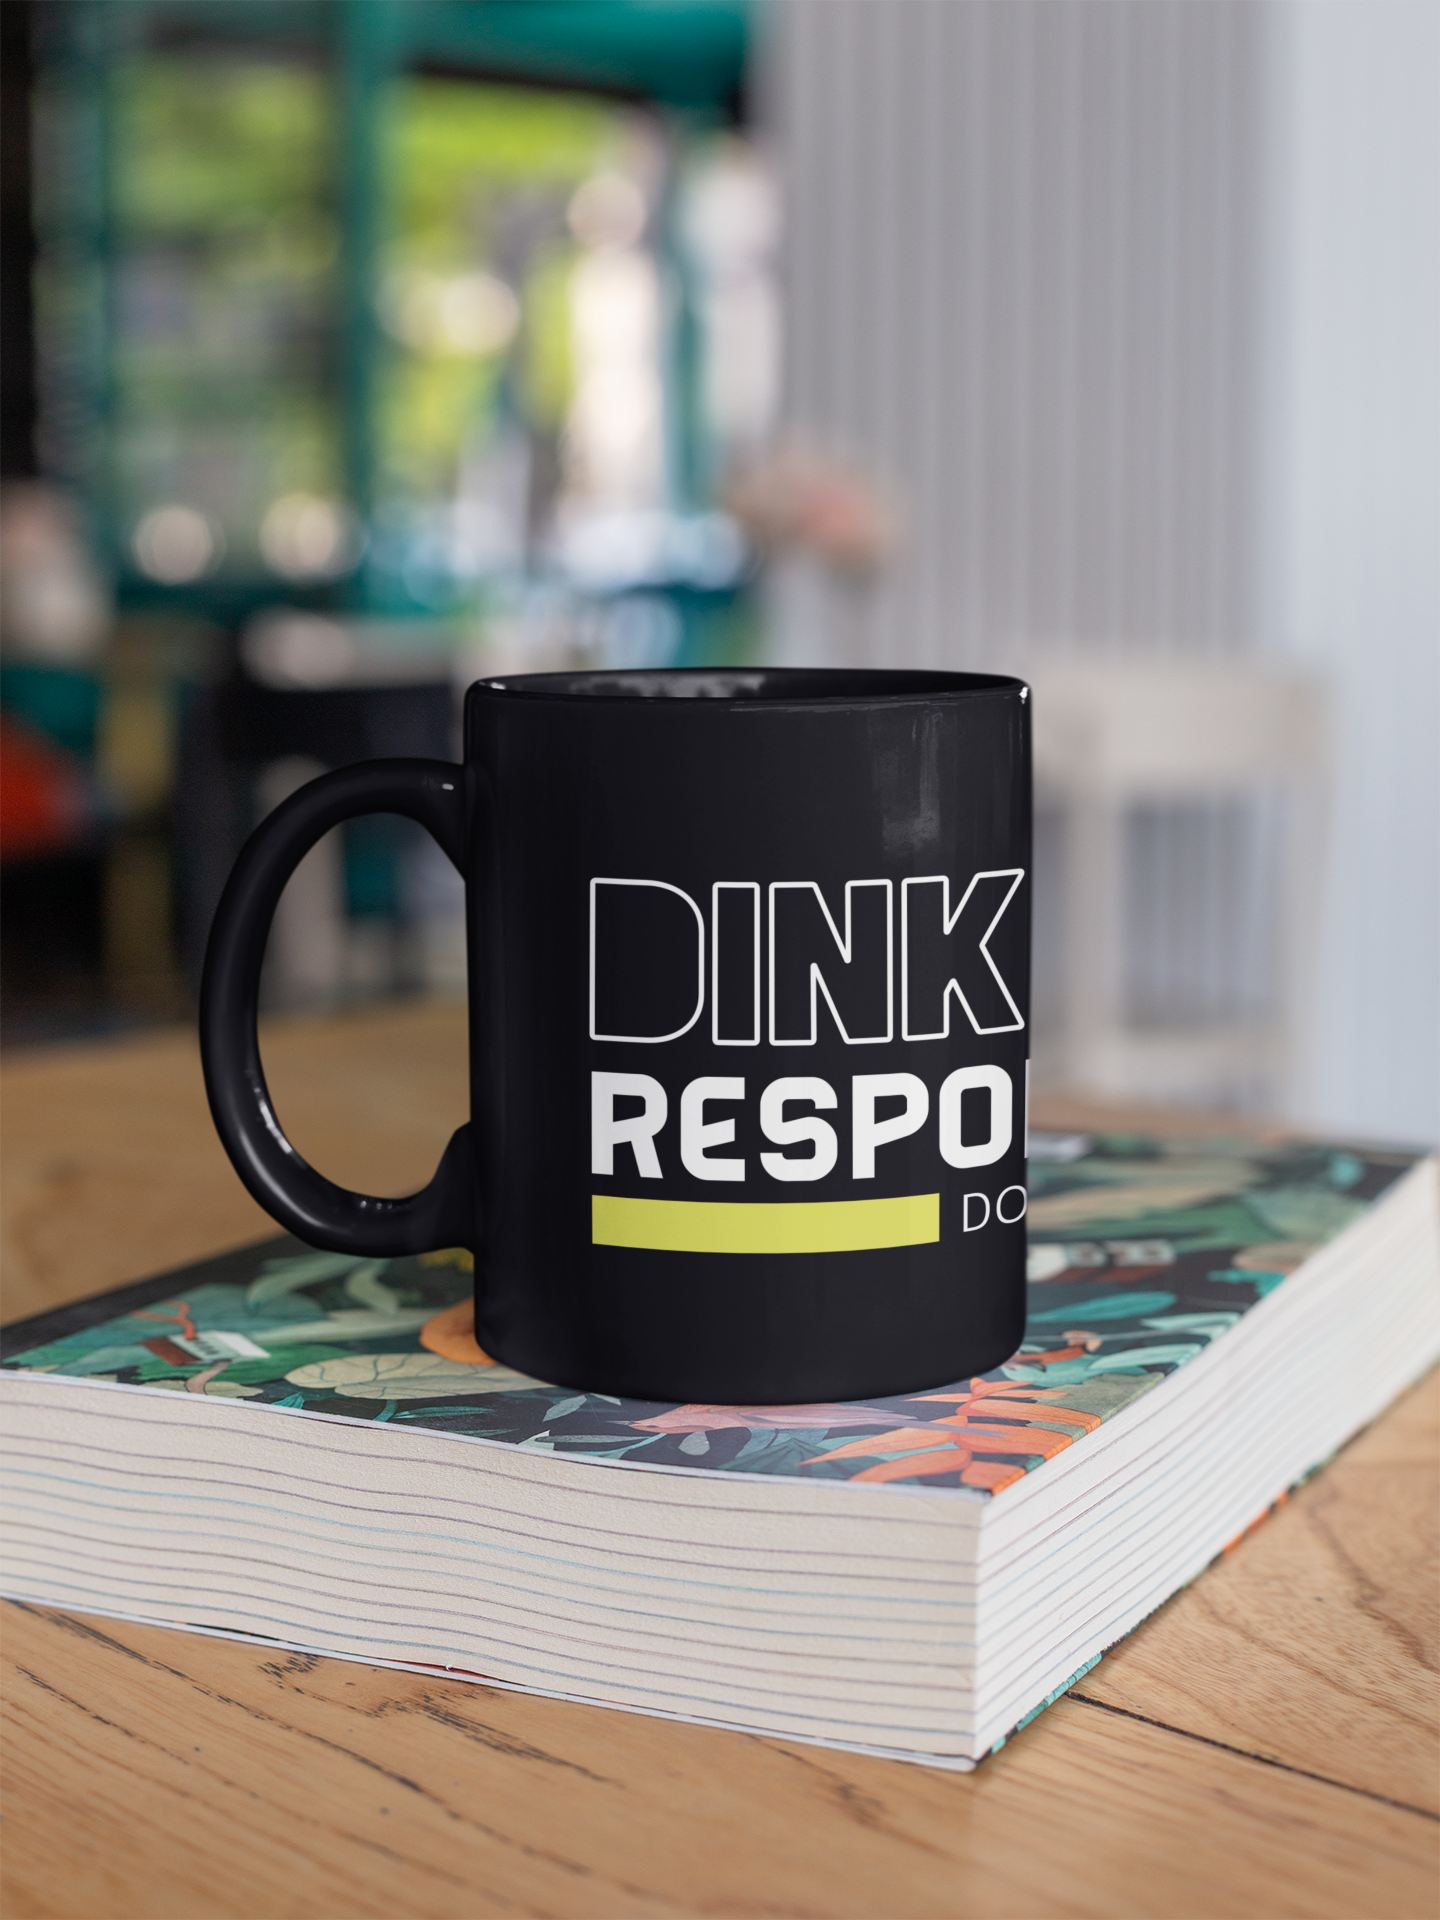 Dink Responsibly.. Don't Get Smashed